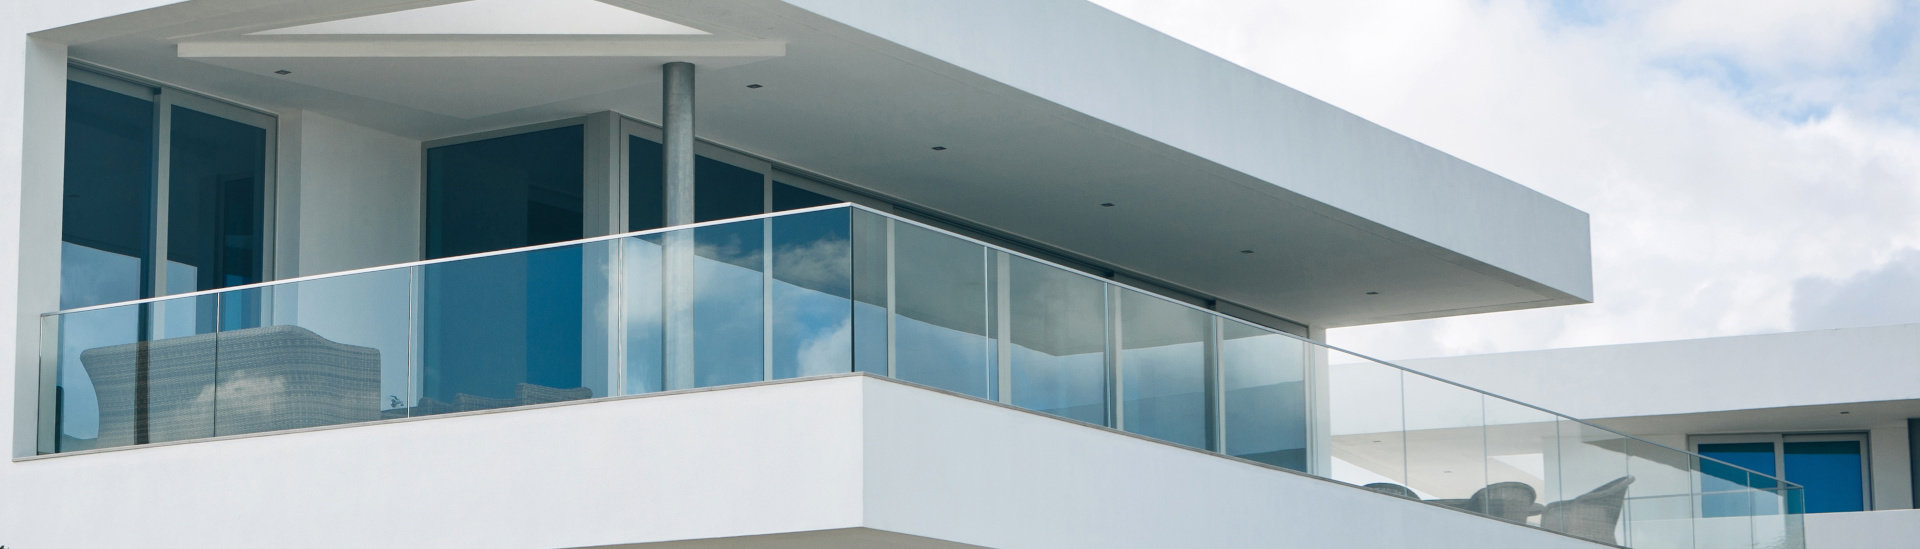 Glasgeländer für Balkon, Terrasse, Treppe und Galerie in...